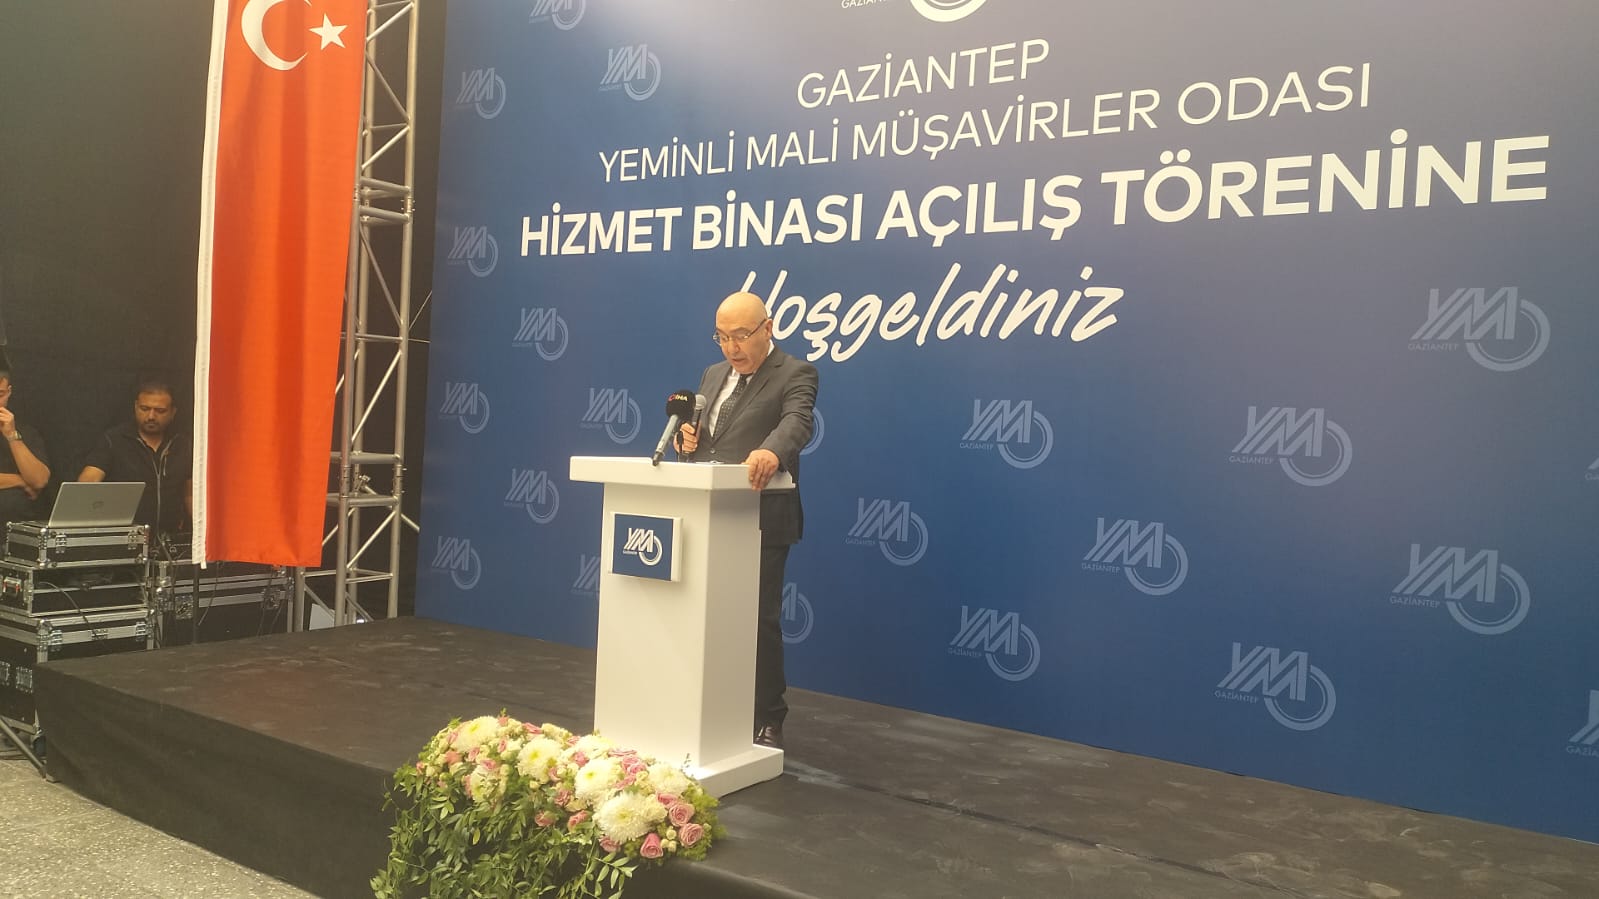 Gaziantep’in Ekonomik Büyümesine Destek Sağlayacak Hizmet Binası Açıldı (7)